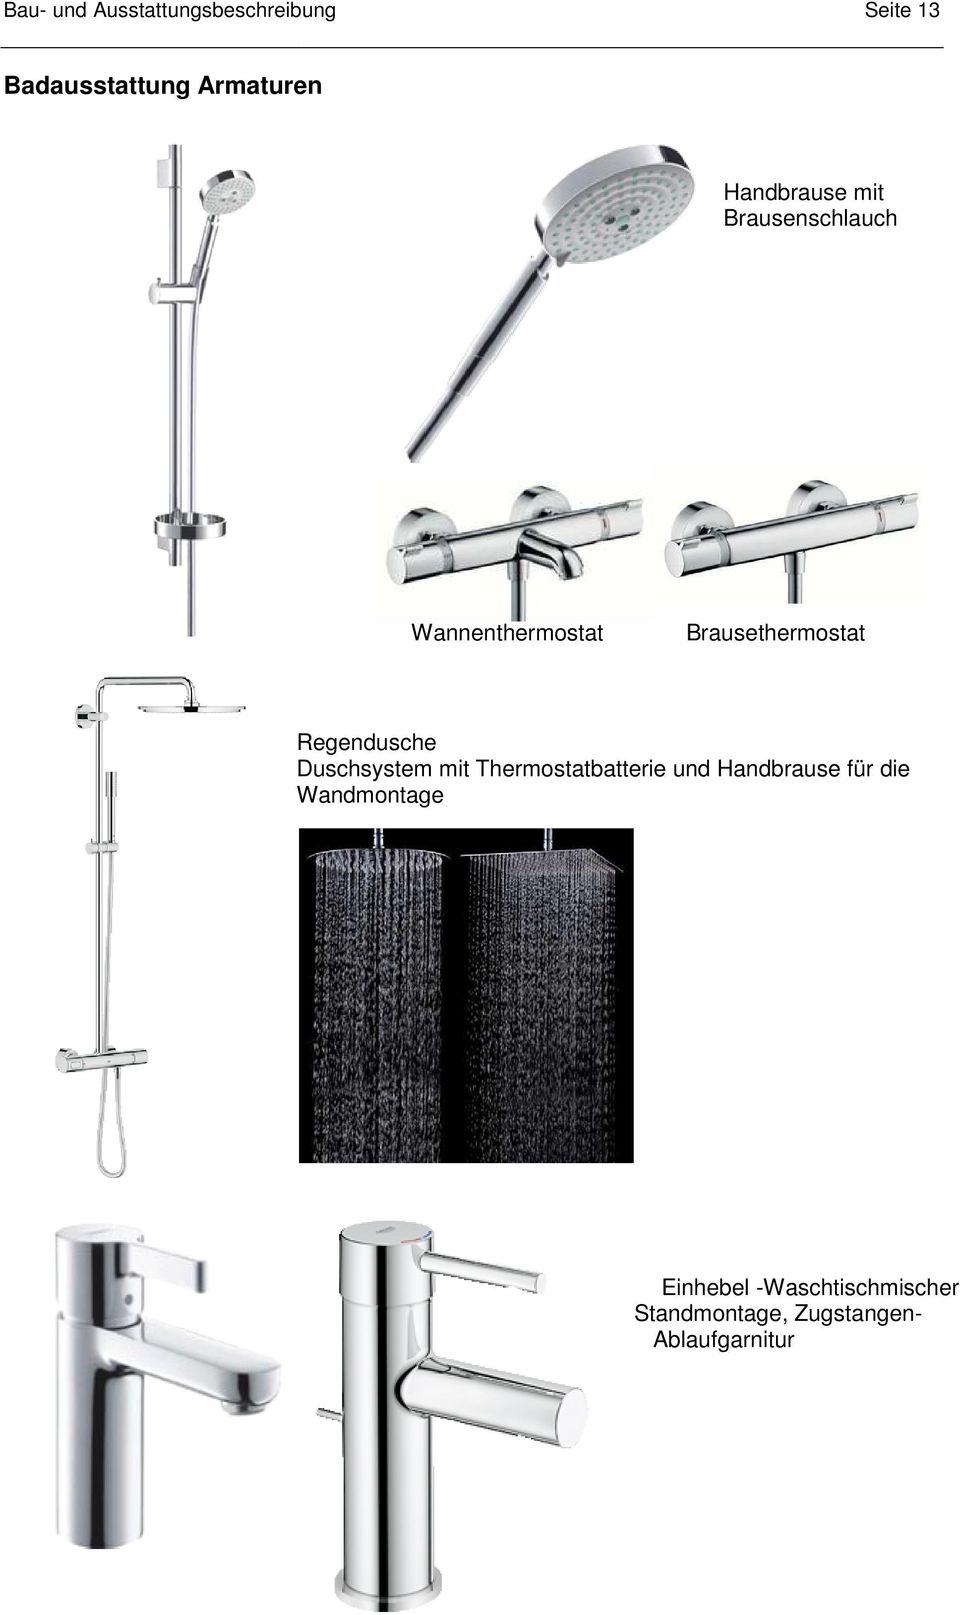 Regendusche Duschsystem mit Thermostatbatterie und Handbrause für die